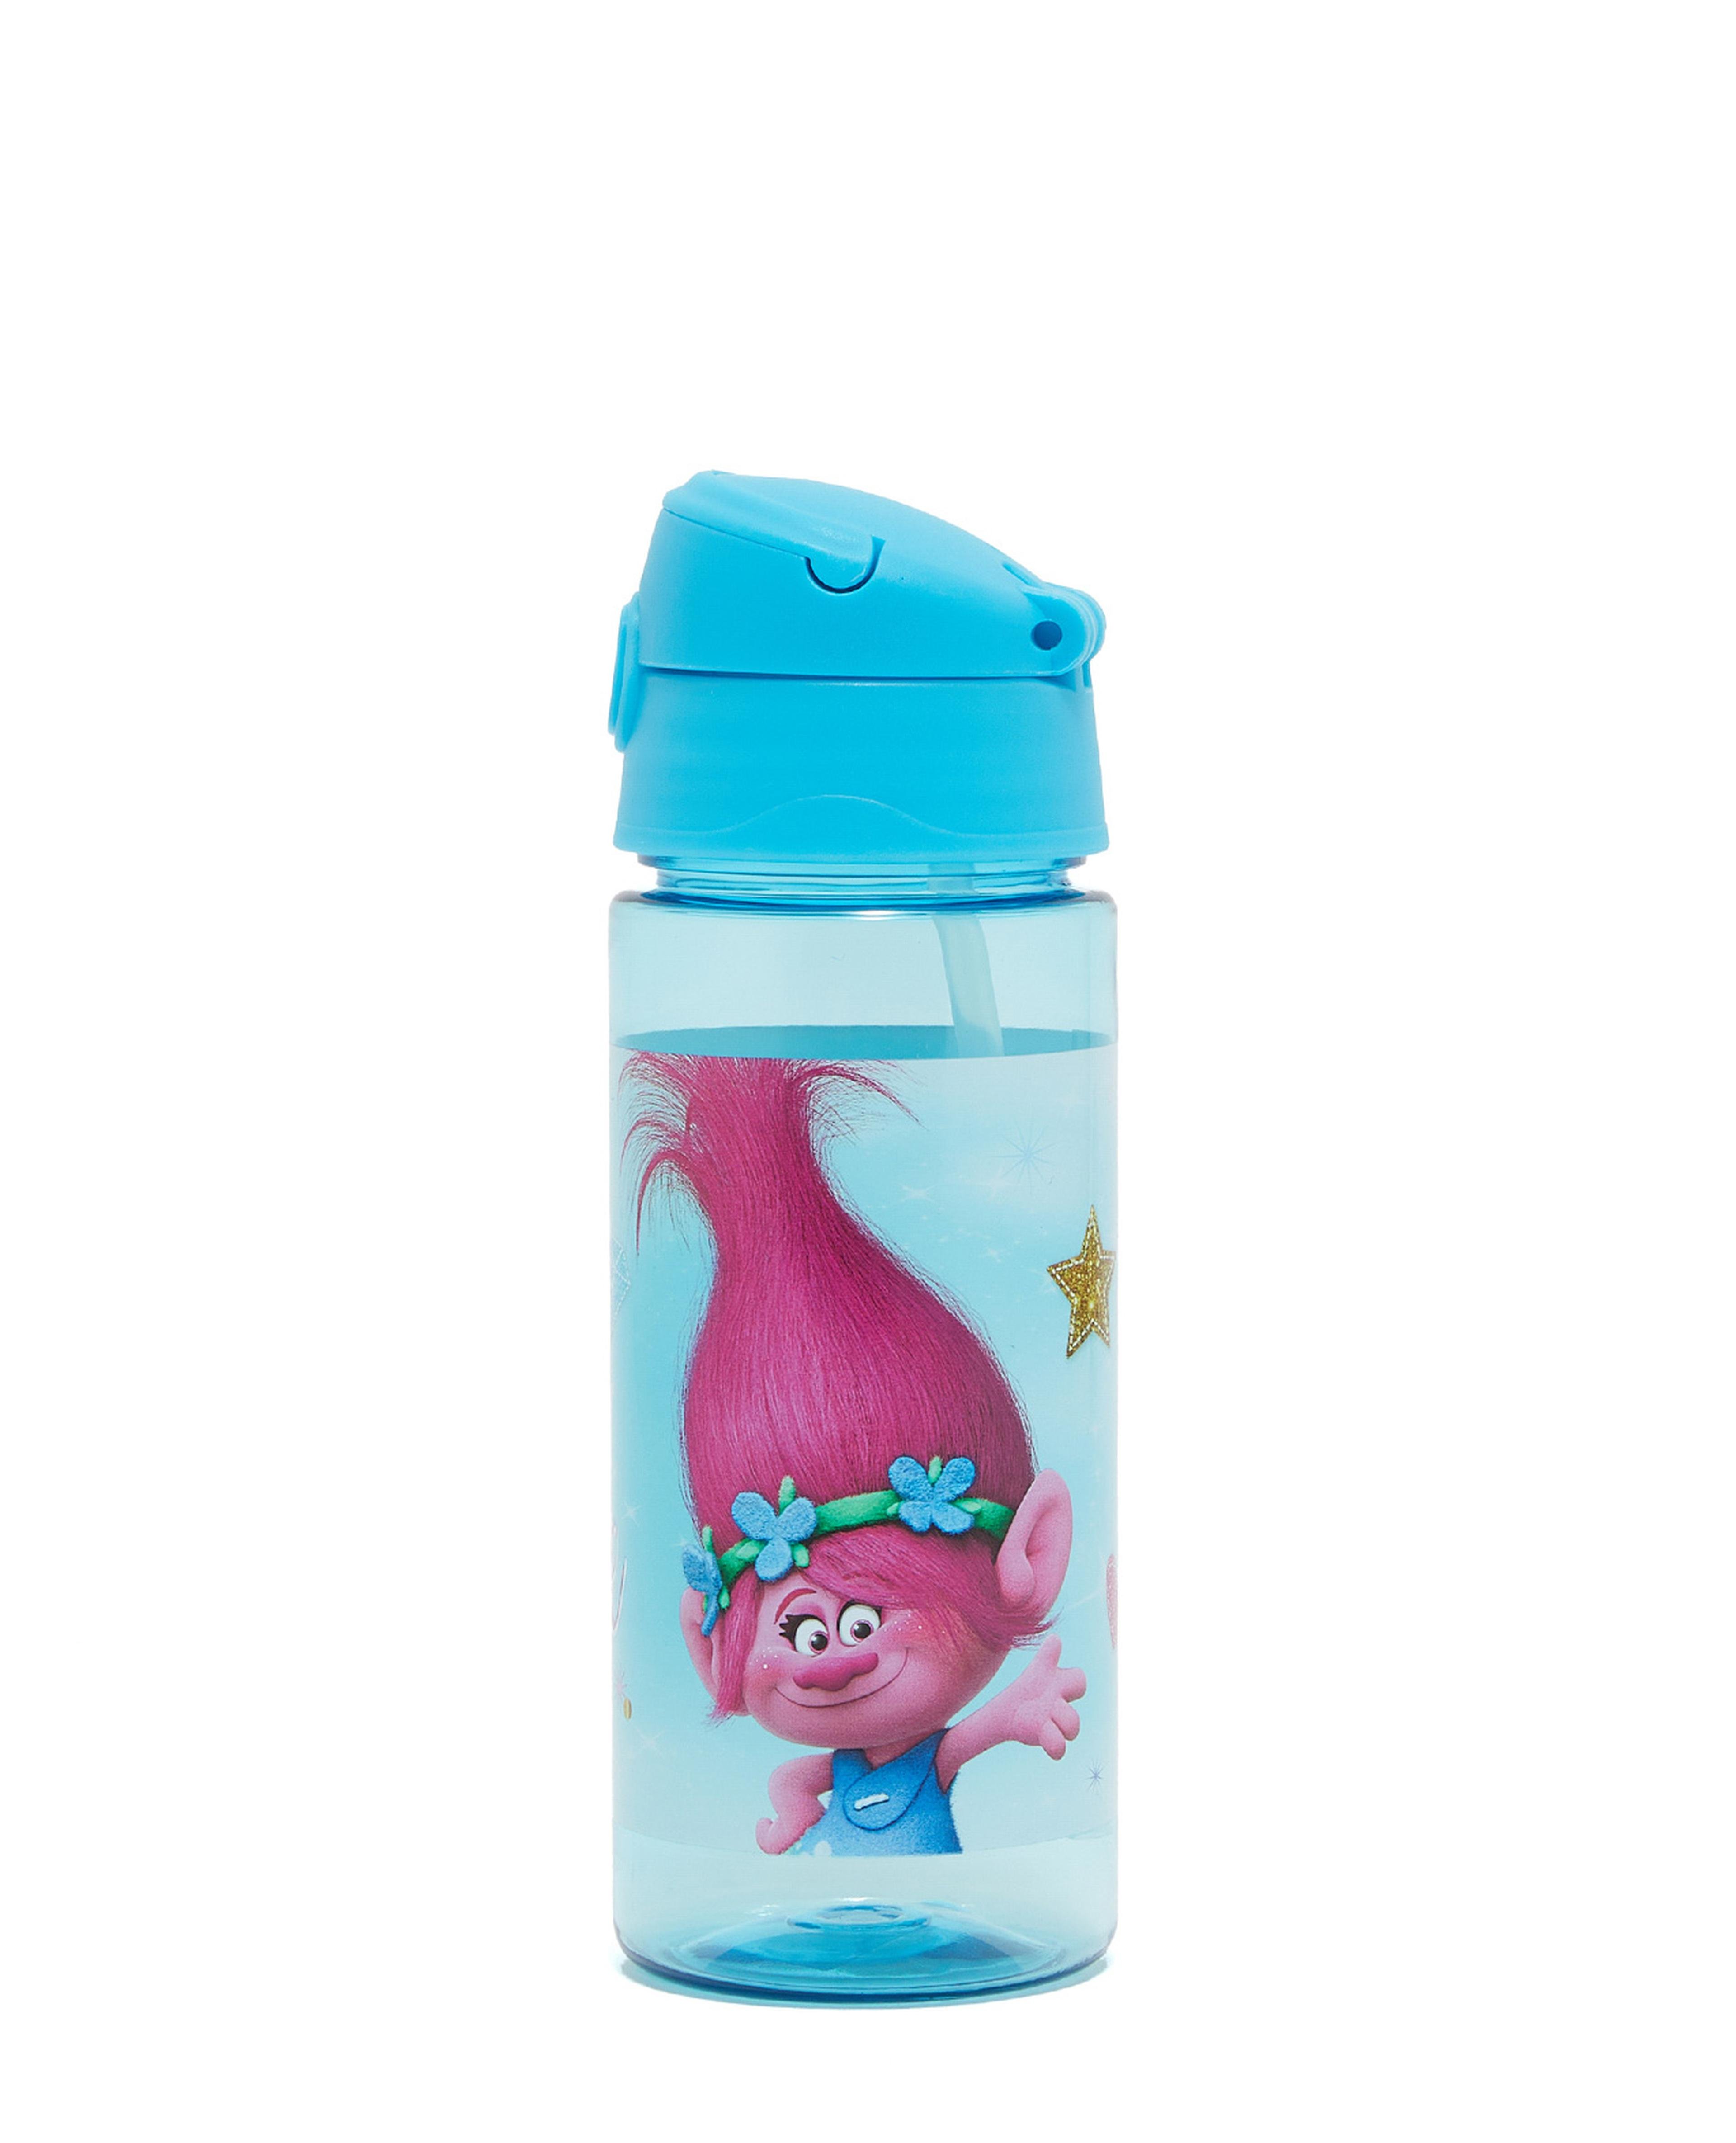 Trolls Sipper Water Bottle, 500 ml